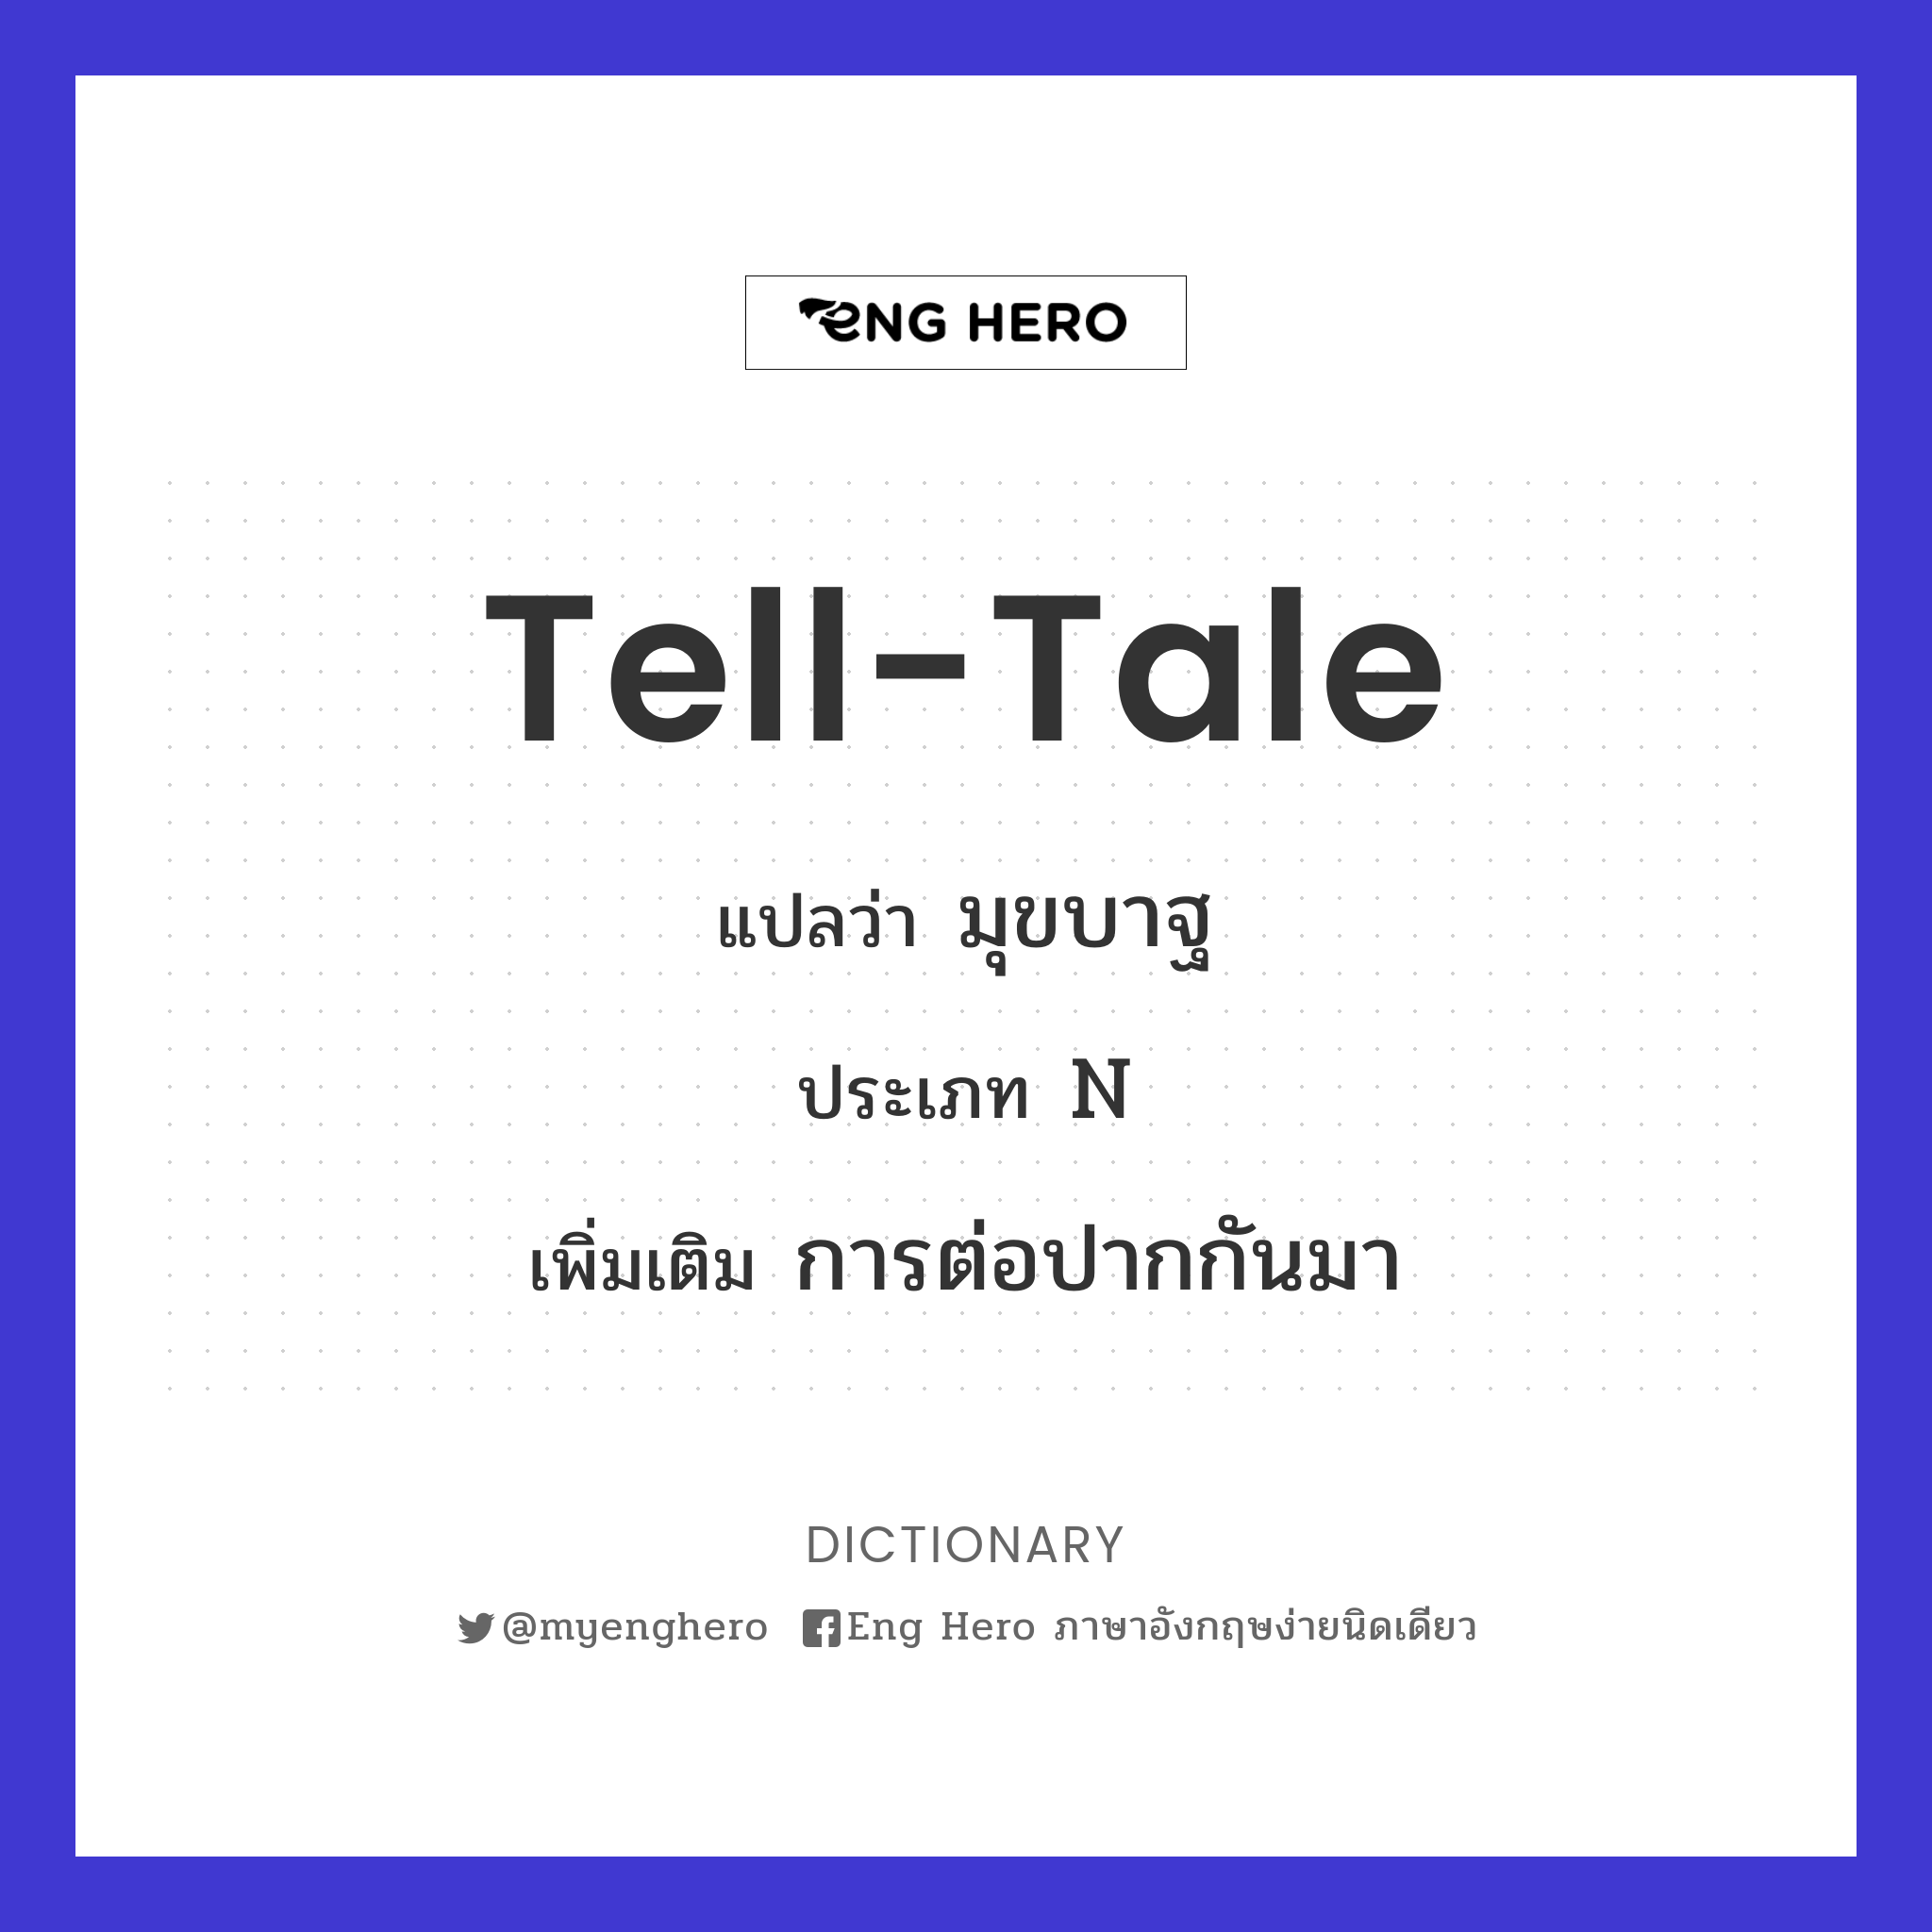 tell-tale